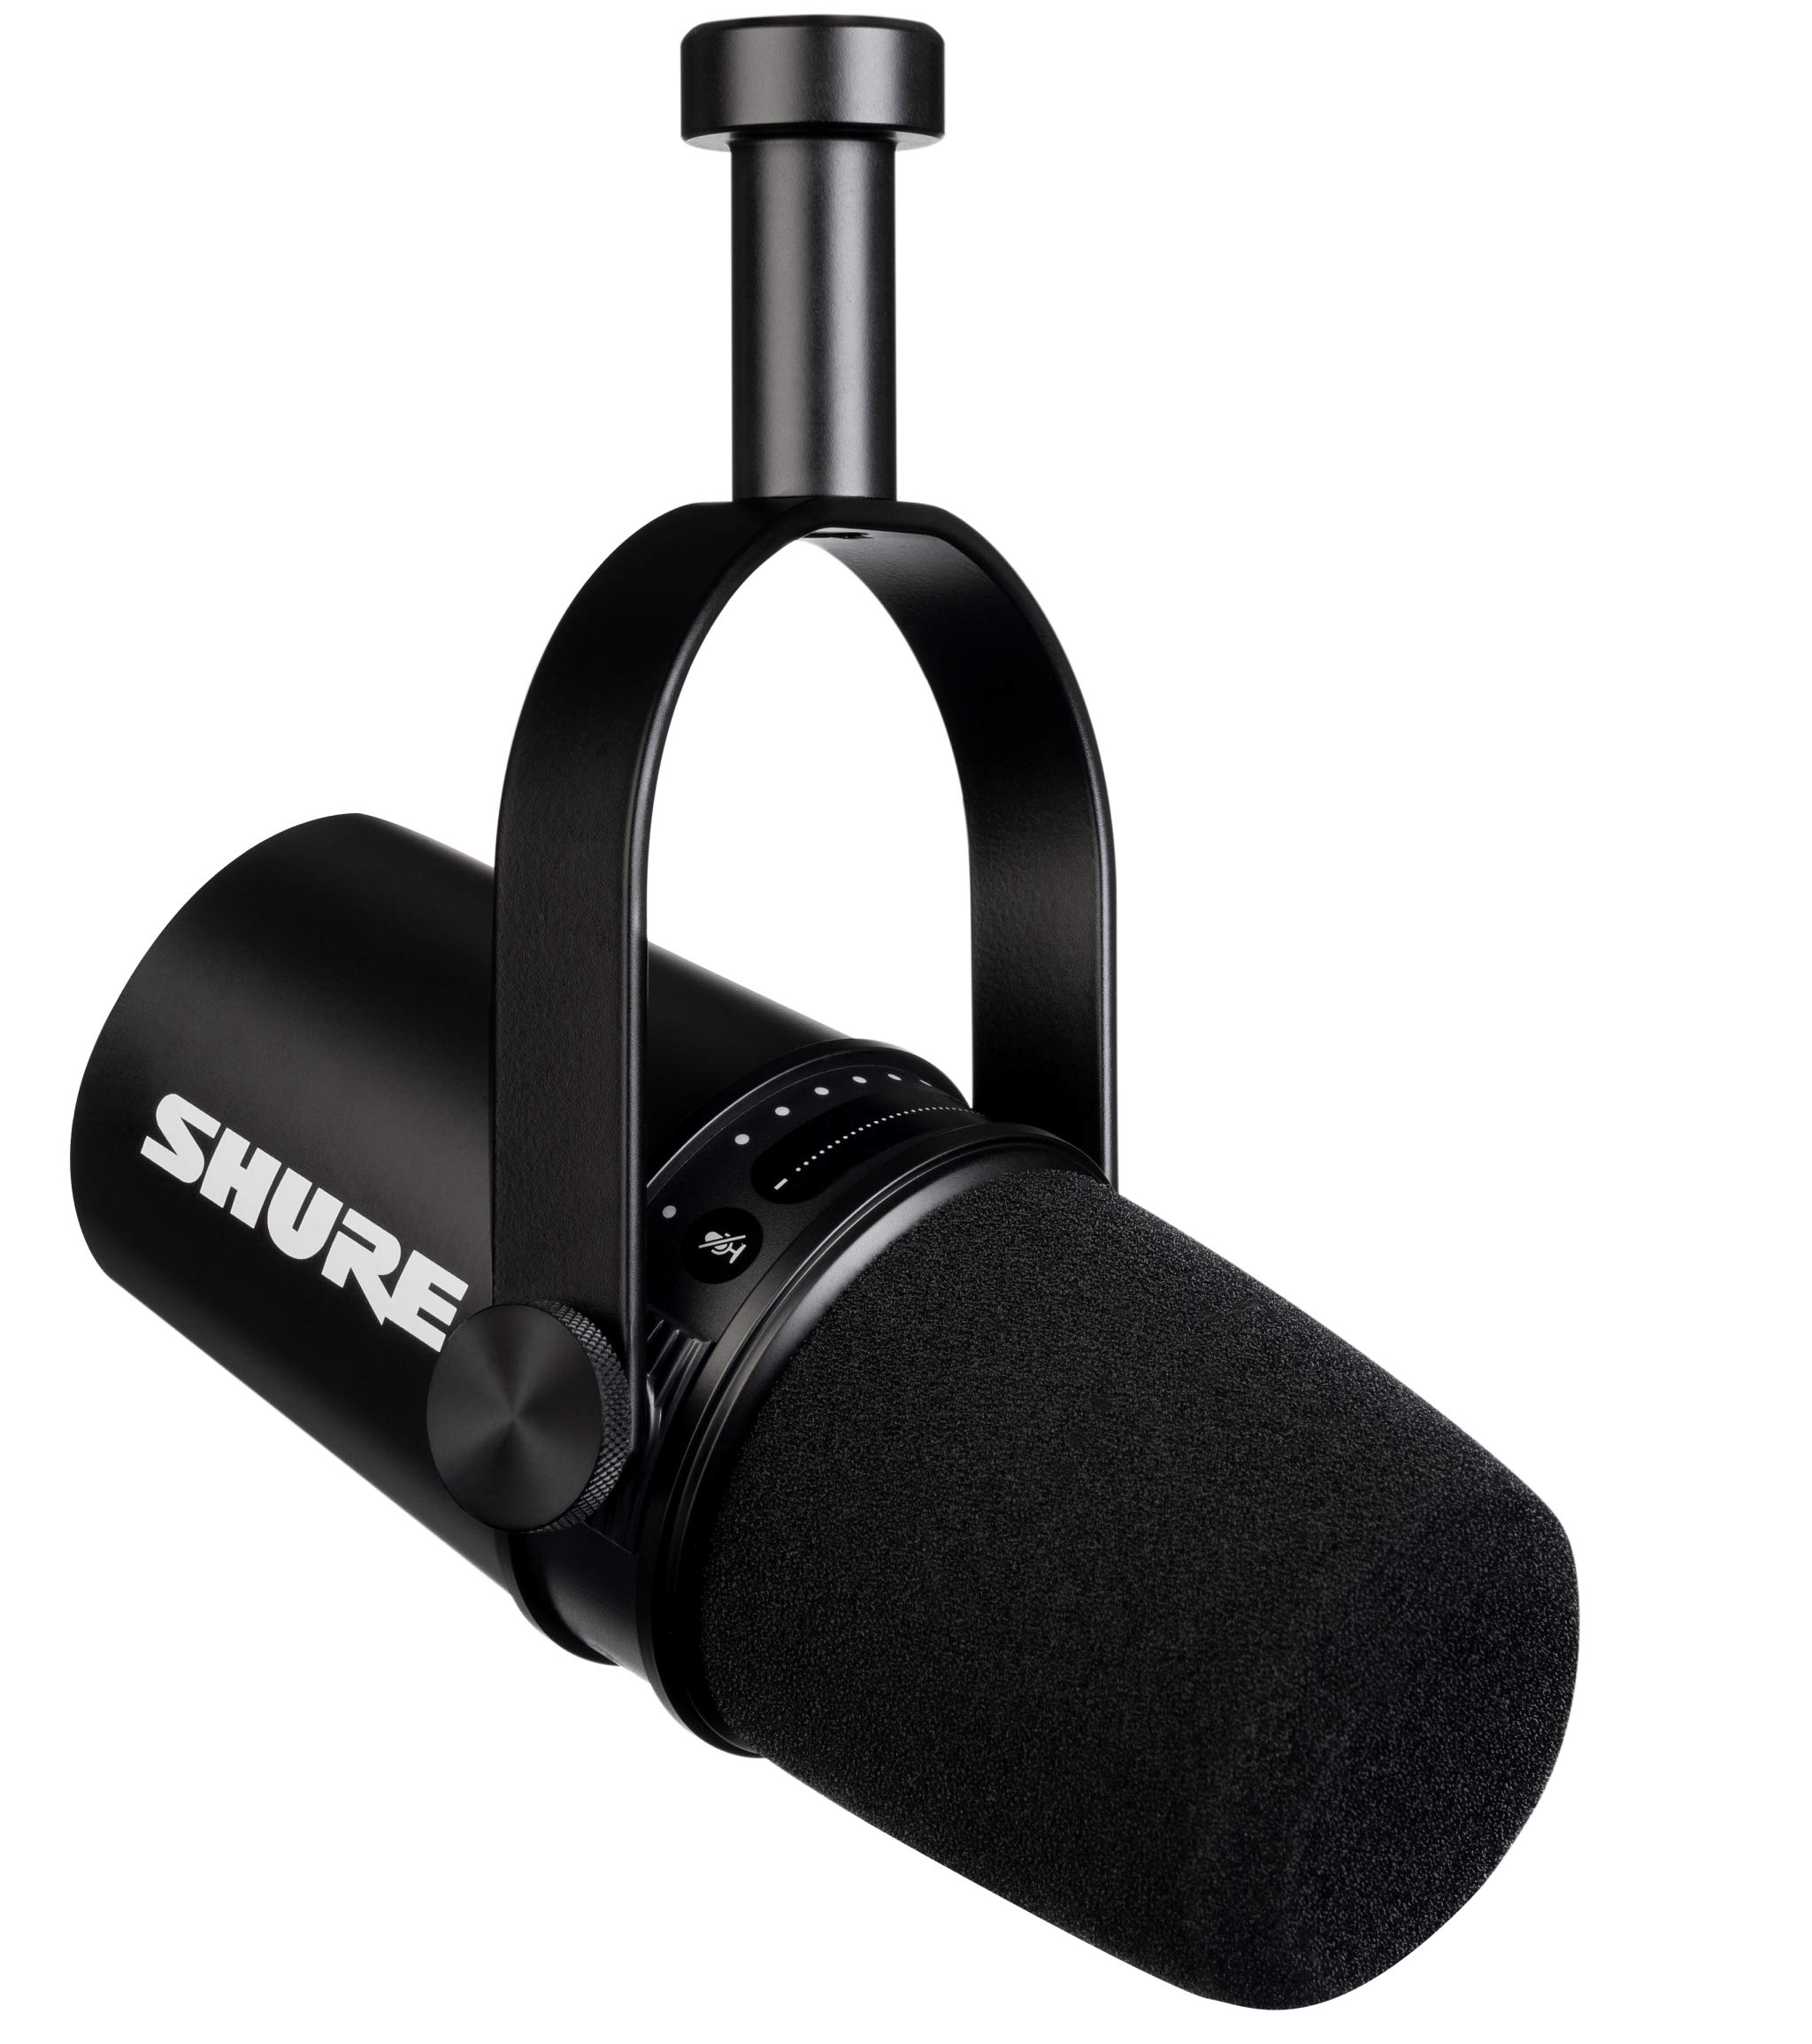 acheter Shure MV7 USB Podcast Microphone pour Le Podcas